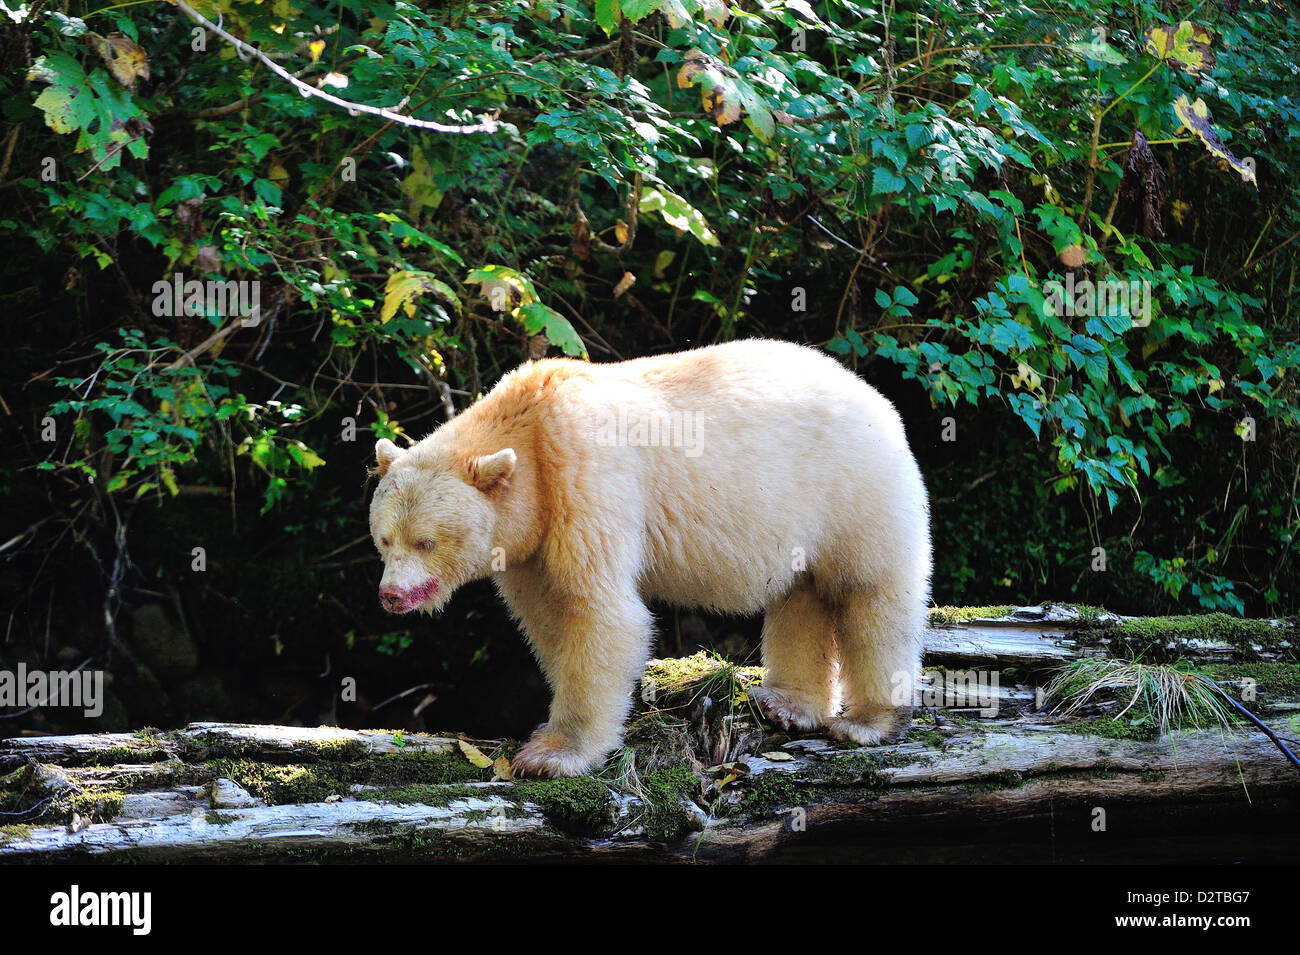 Spirito di Orso (Kermode bear), grande orso nella foresta pluviale, British Columbia, Canada, America del Nord Foto Stock